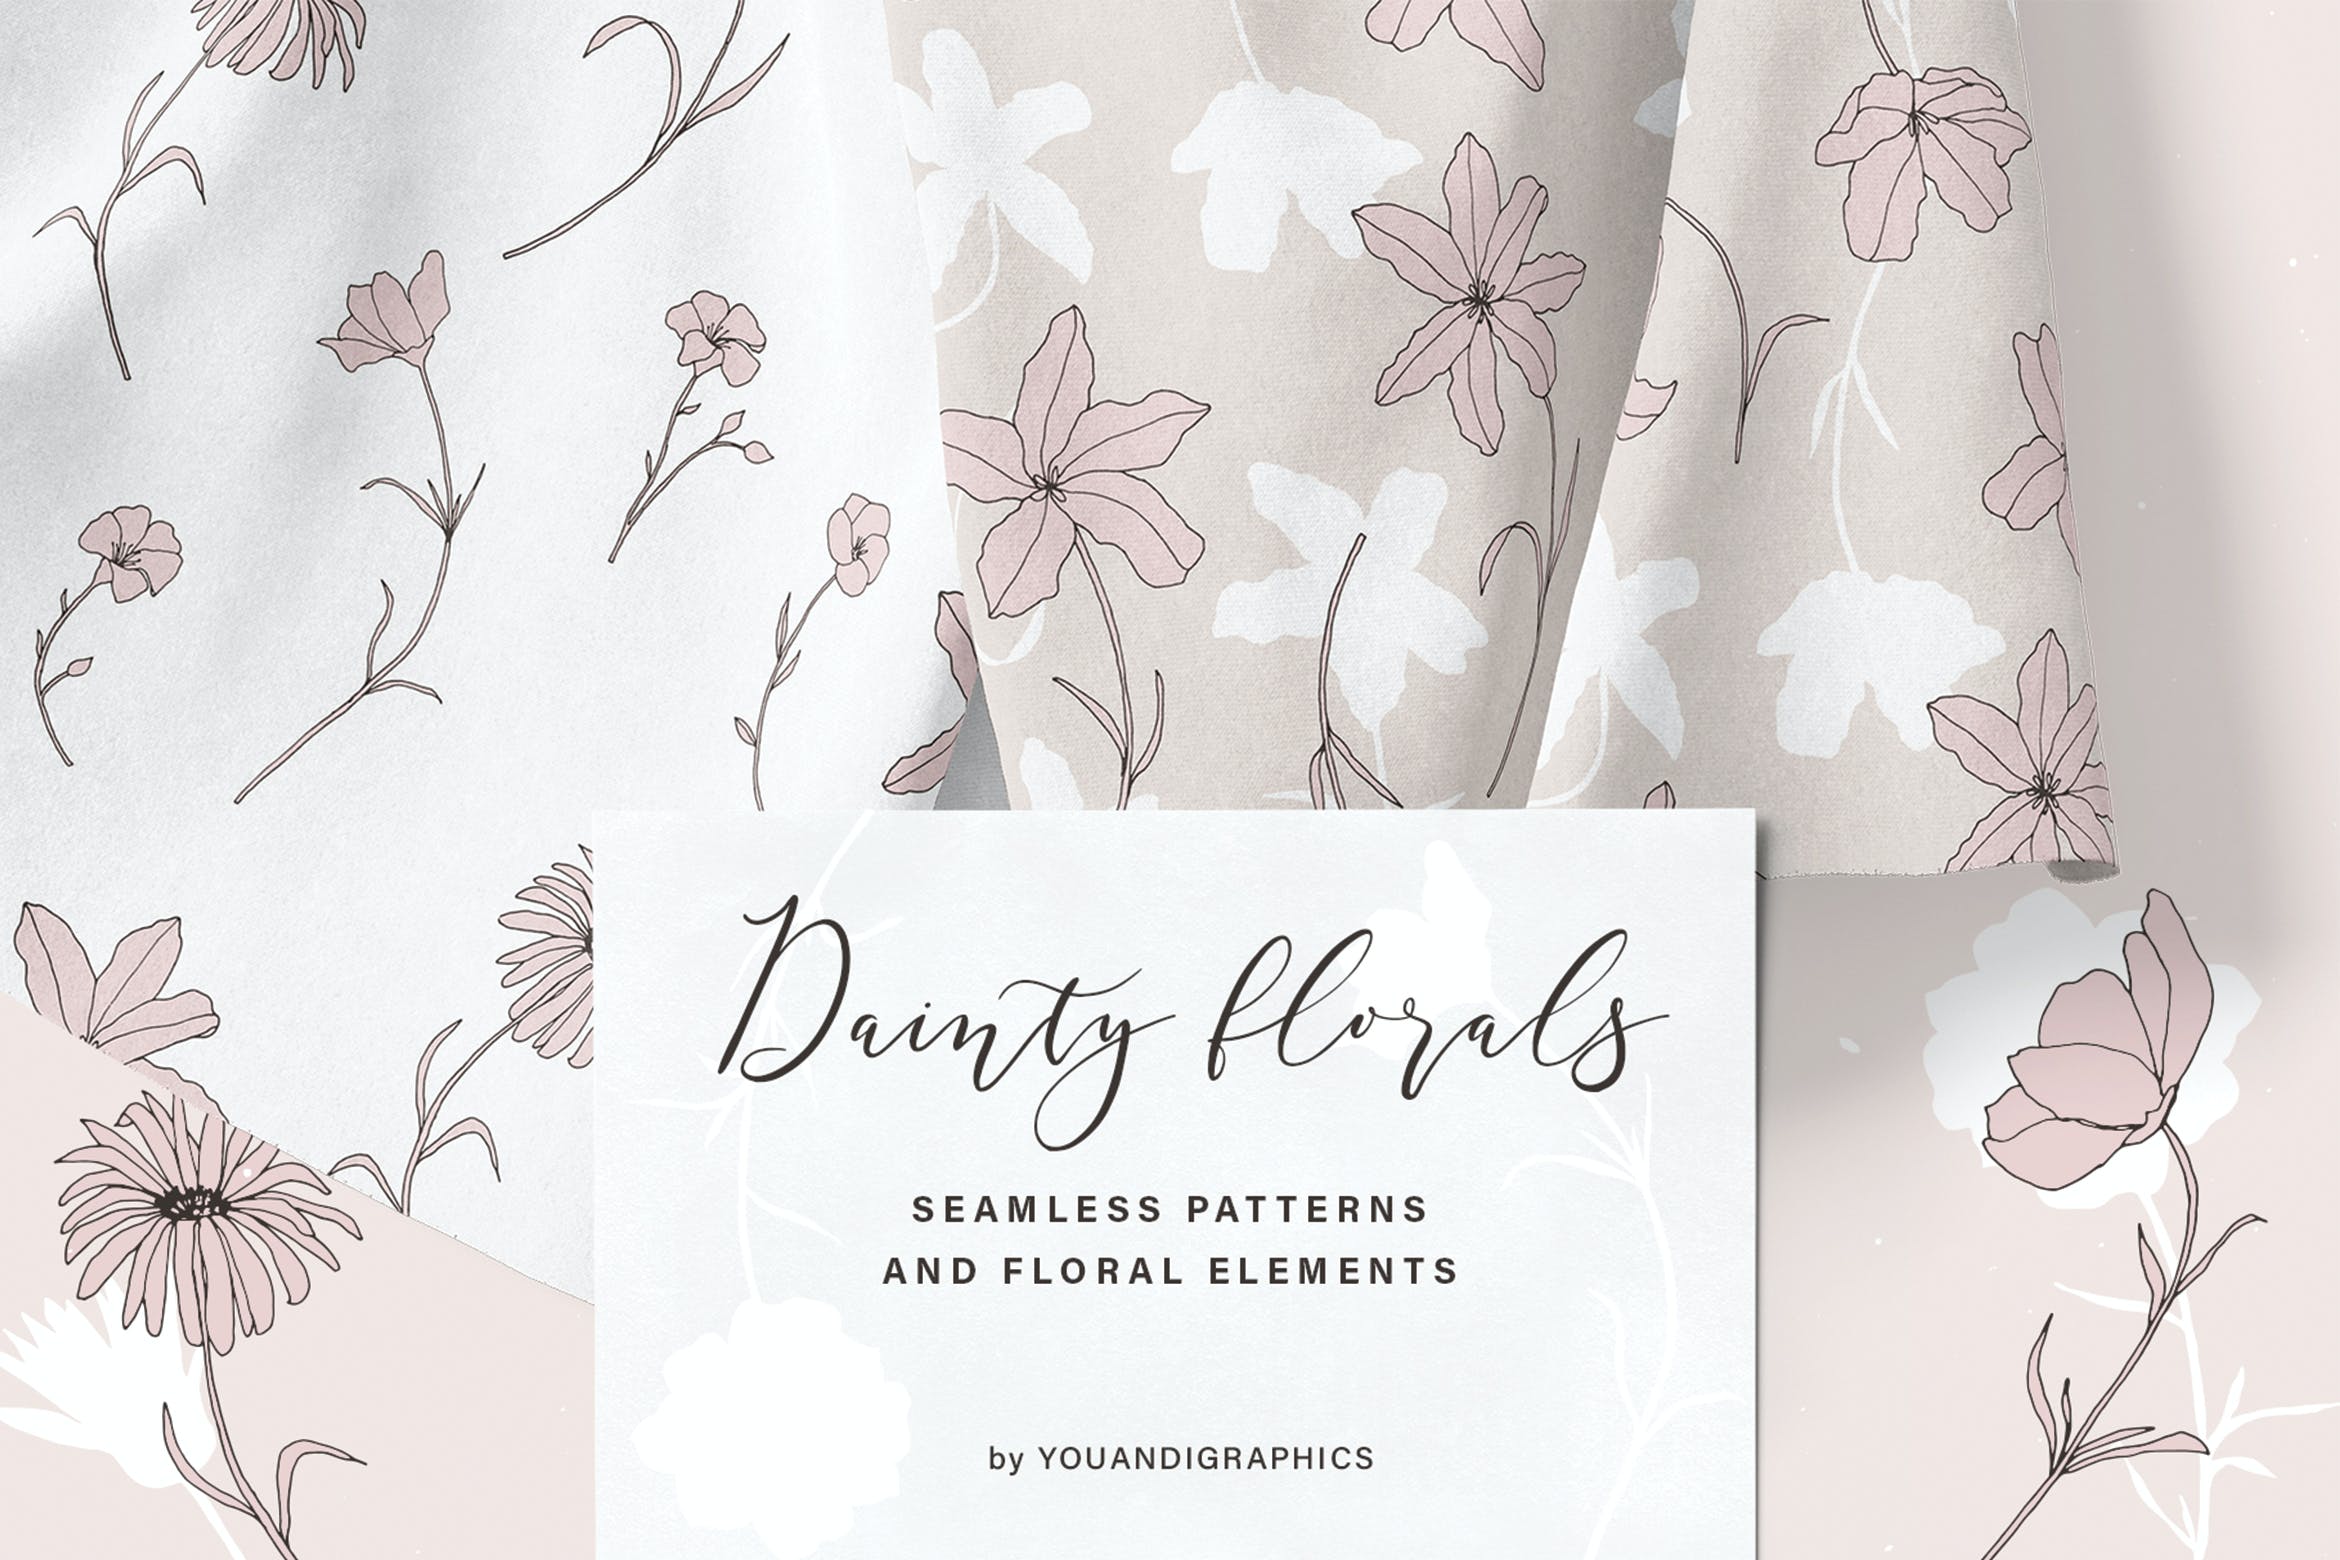 精美的花卉图案和元素 Dainty Floral Patterns & Elements 图片素材 第1张